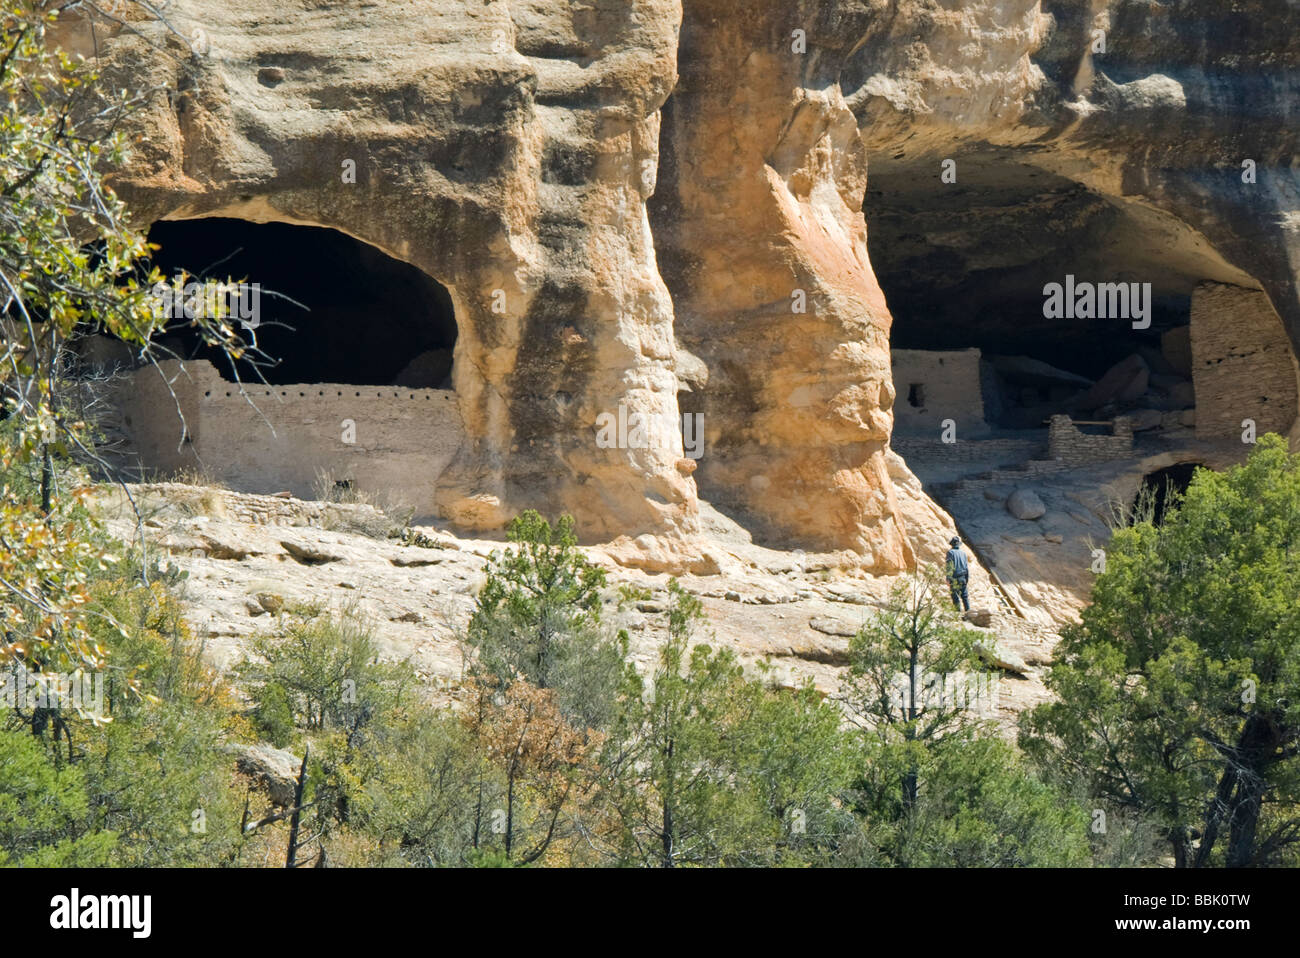 Stati Uniti d'America New Mexico Gila Cliff Dwellings National Monument Cliff strutture di abitazione in grotte naturali in scogliera Foto Stock